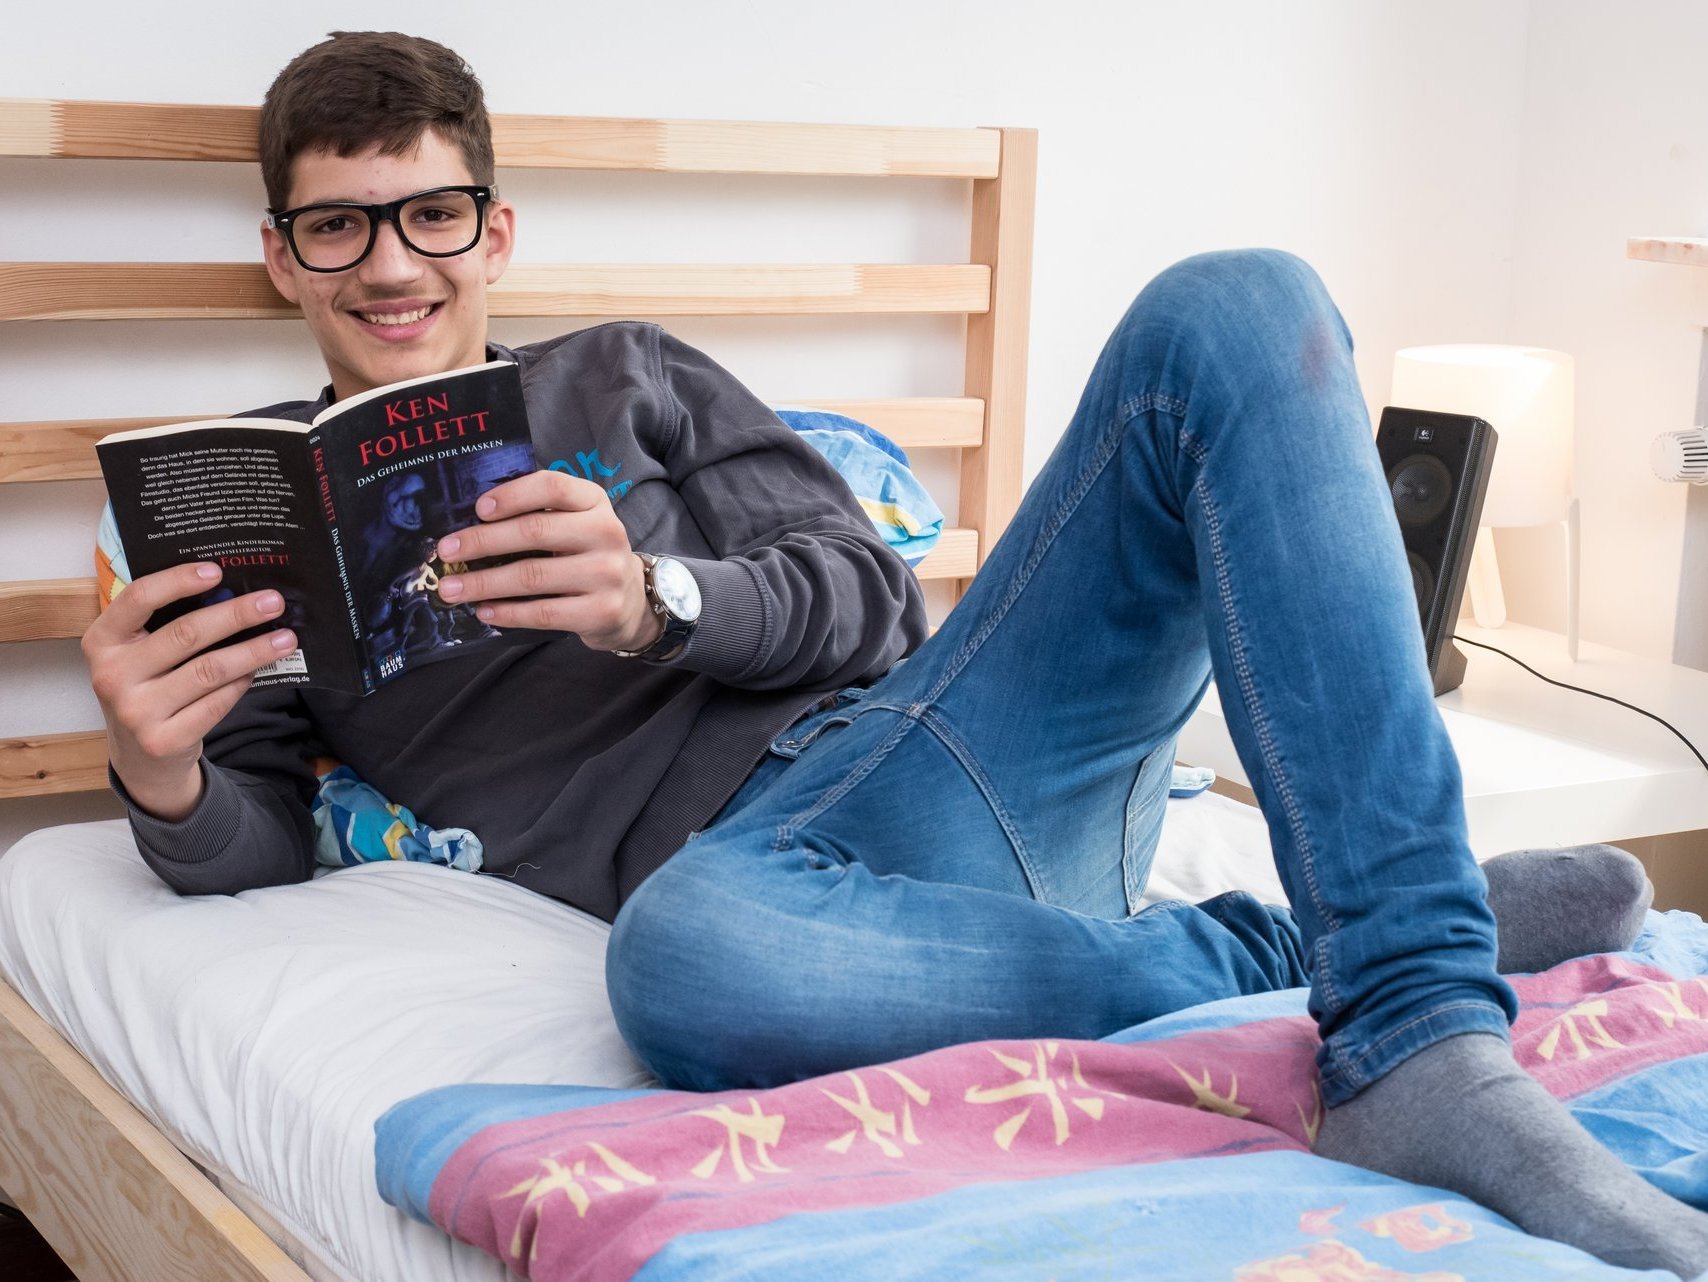 Jugendlicher beim Lesen eines Buchs auf dem Bett